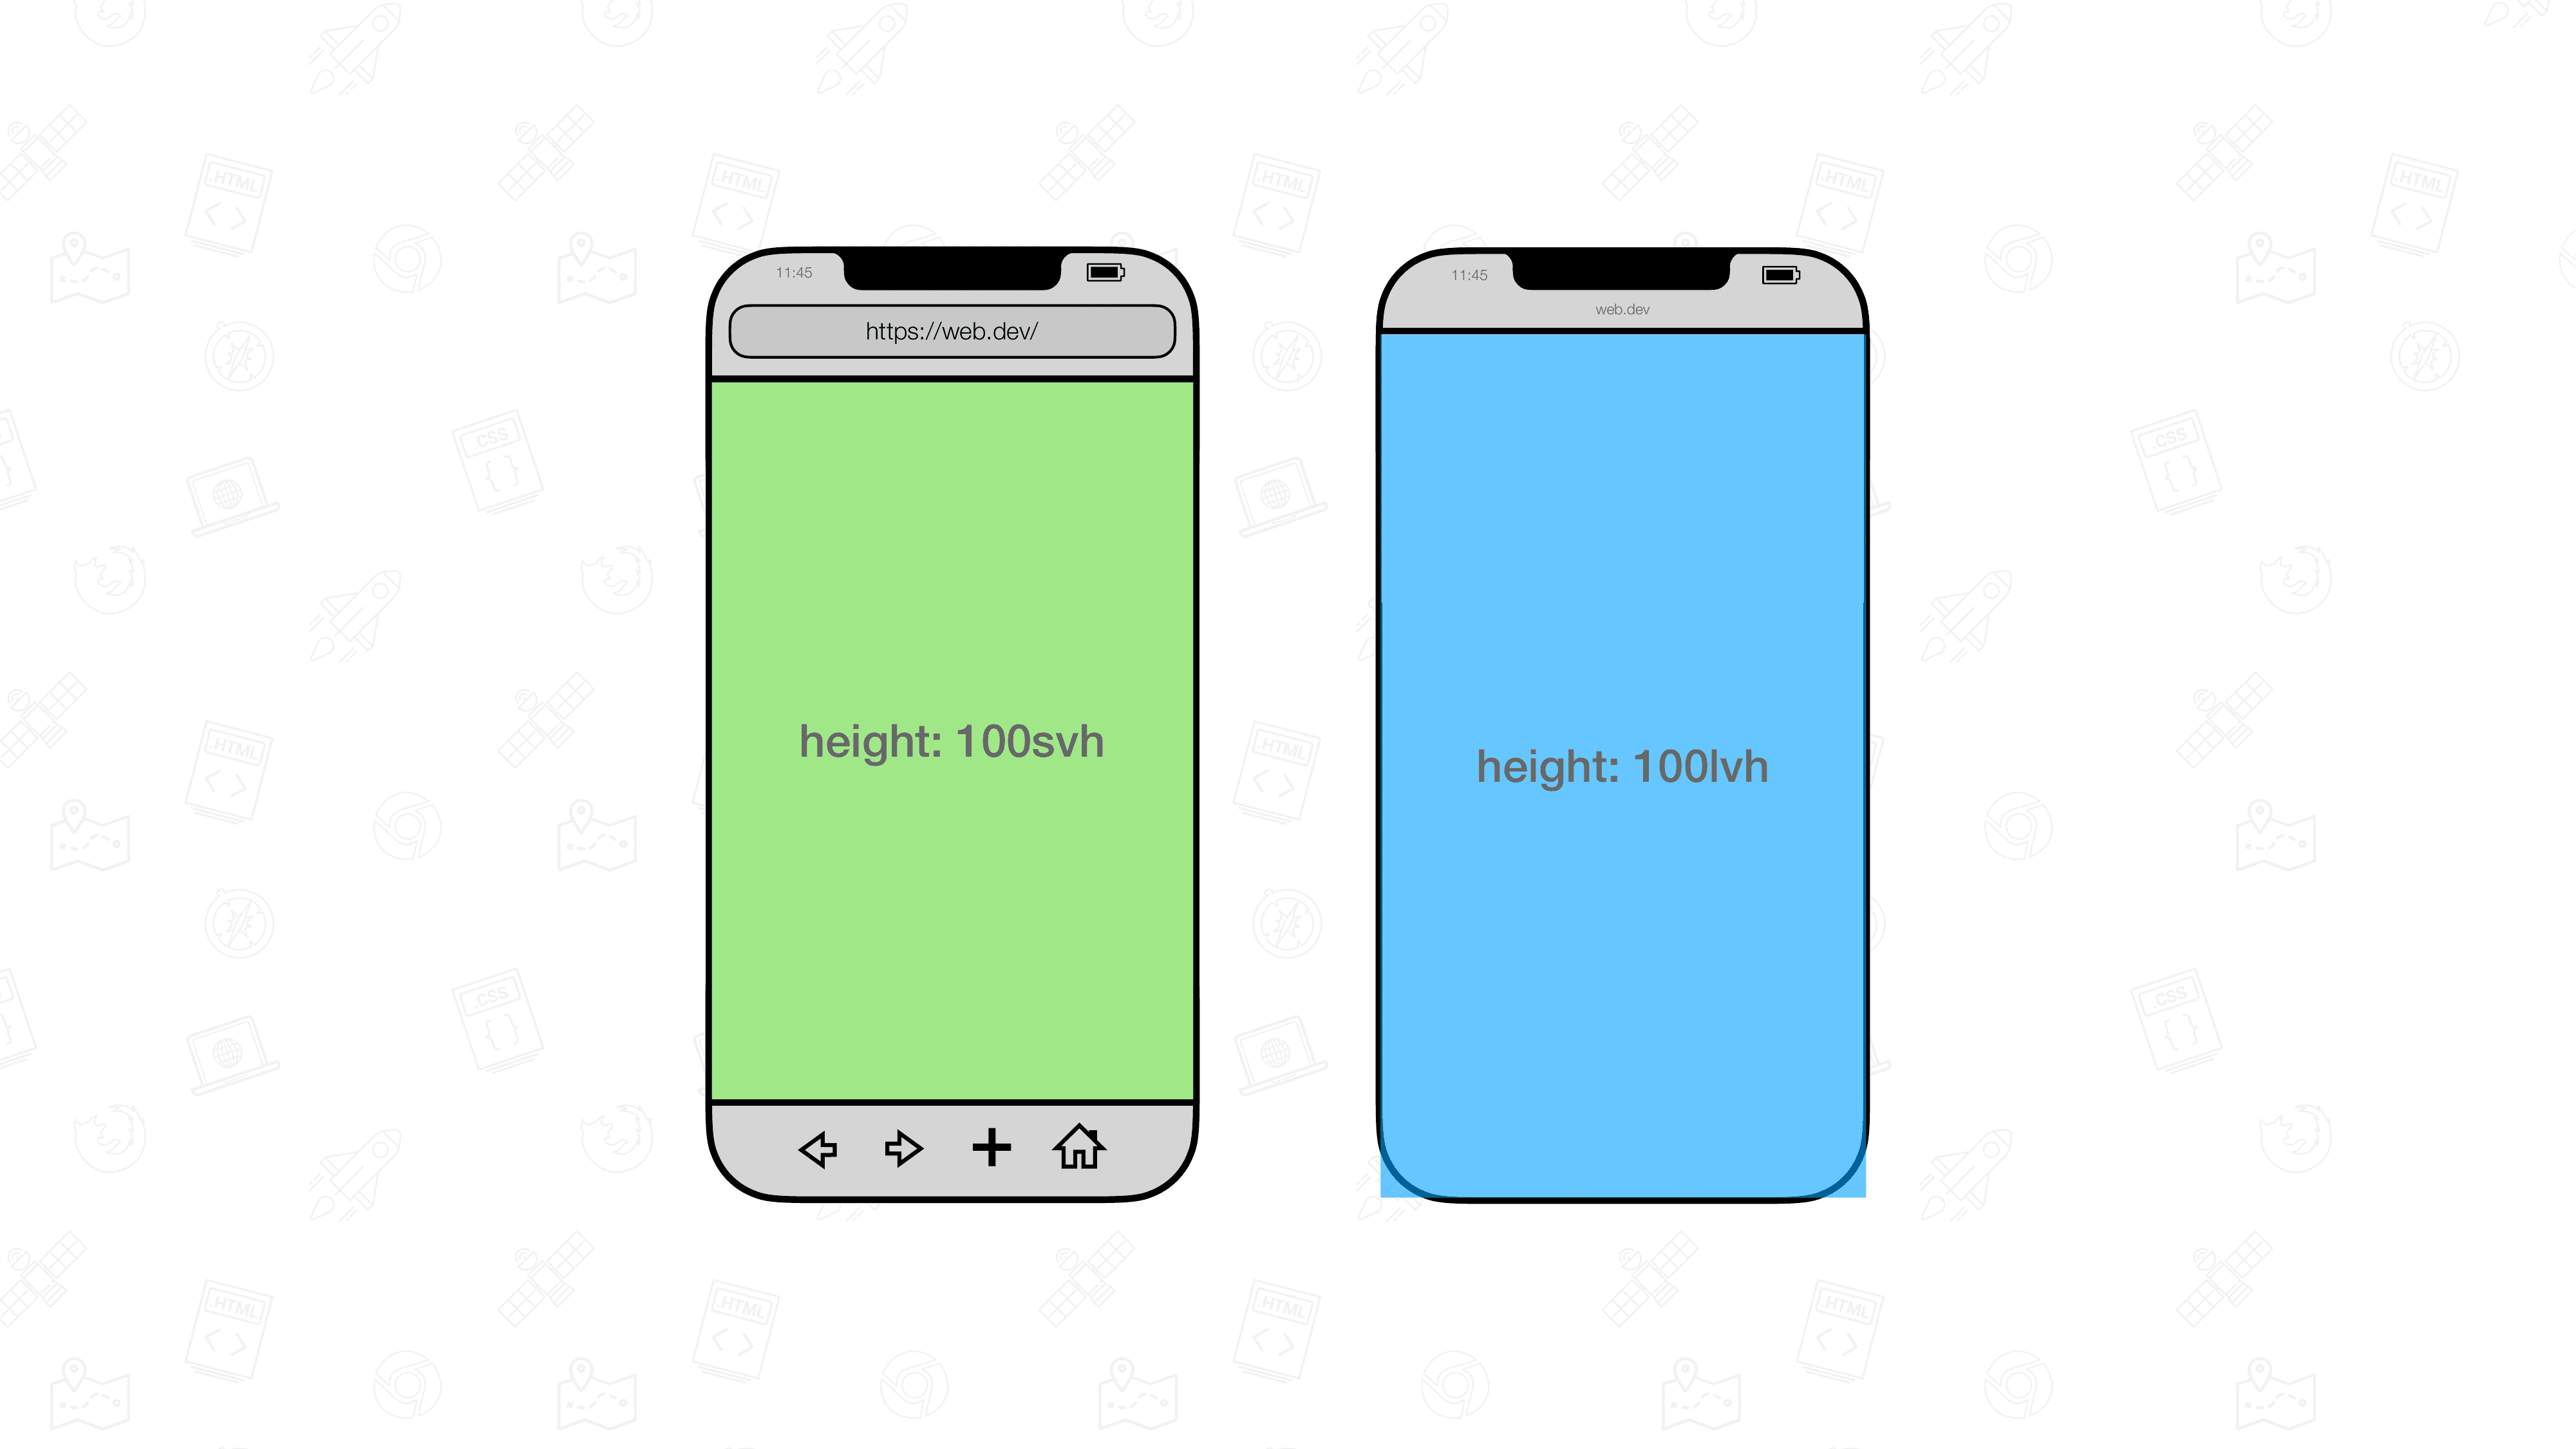 دو تجسم مرورگر تلفن همراه در کنار یکدیگر قرار گرفته اند. یکی دارای یک عنصر به اندازه 100svh و دیگری 100lvh است.